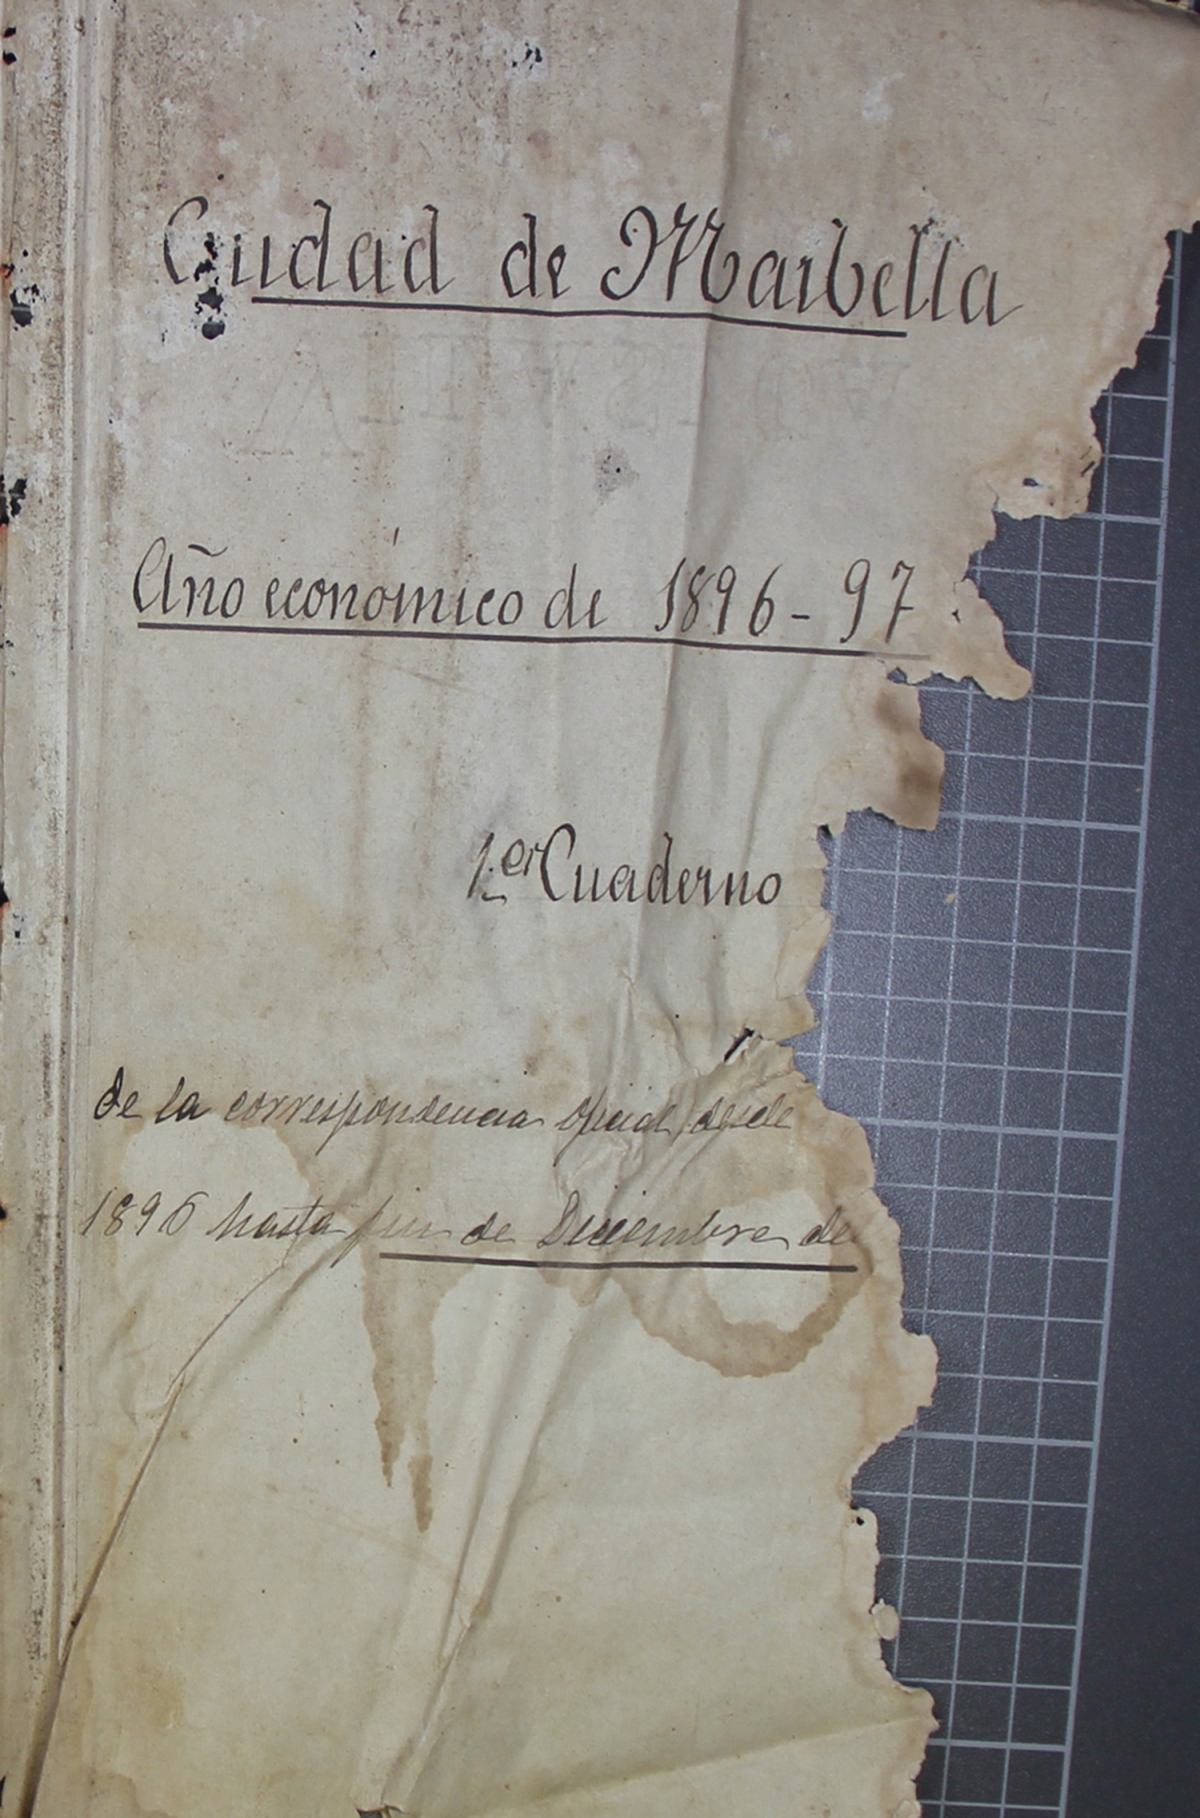 DIGITALIZADA CORRESPONDENCIA OFICIAL ENTRE 1896 Y 1899